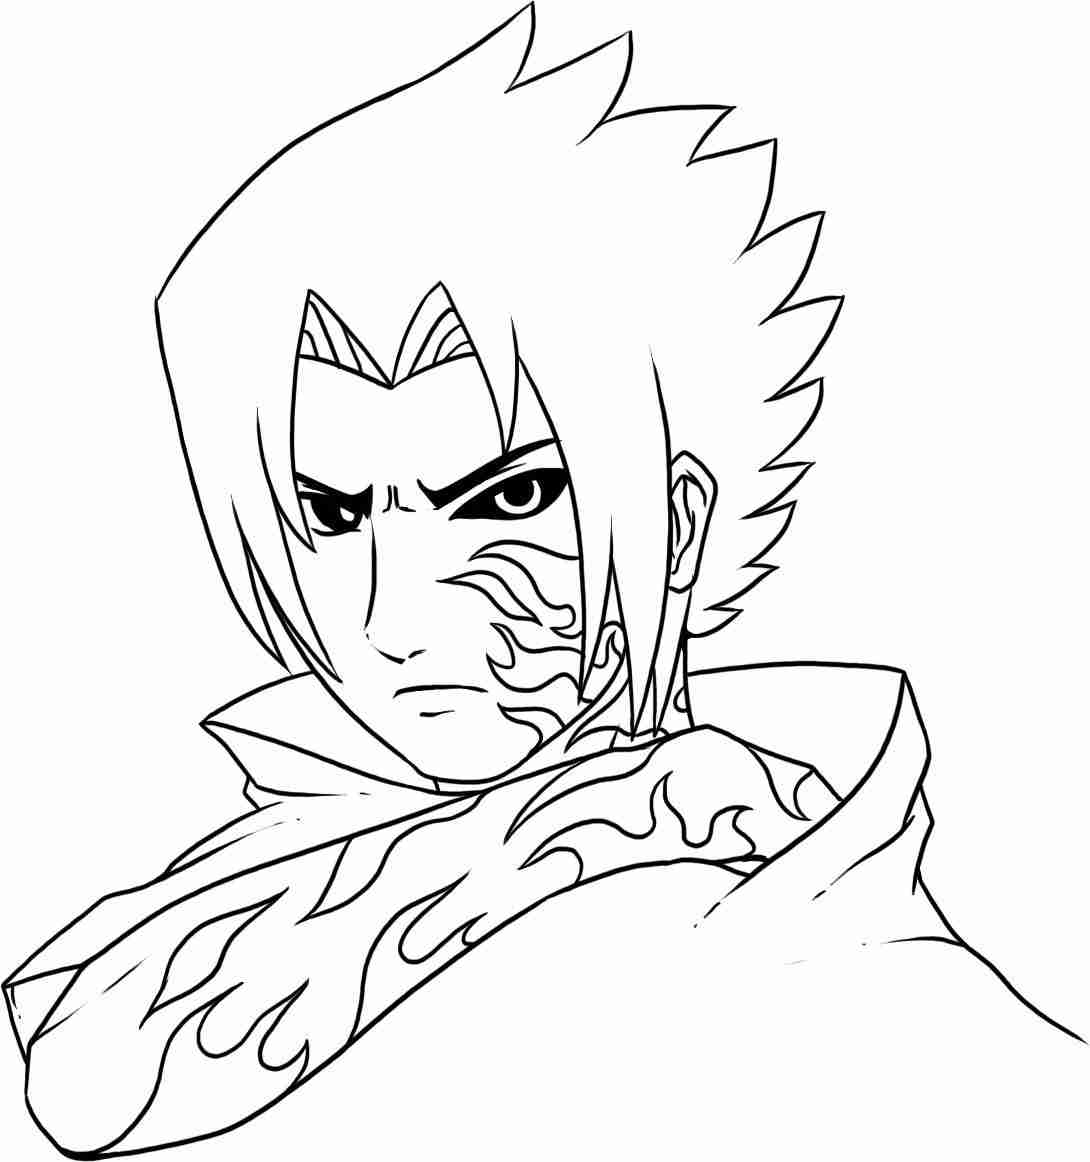 Sasuke llenó la mitad de una maldición especial en su cara y brazo Página para colorear